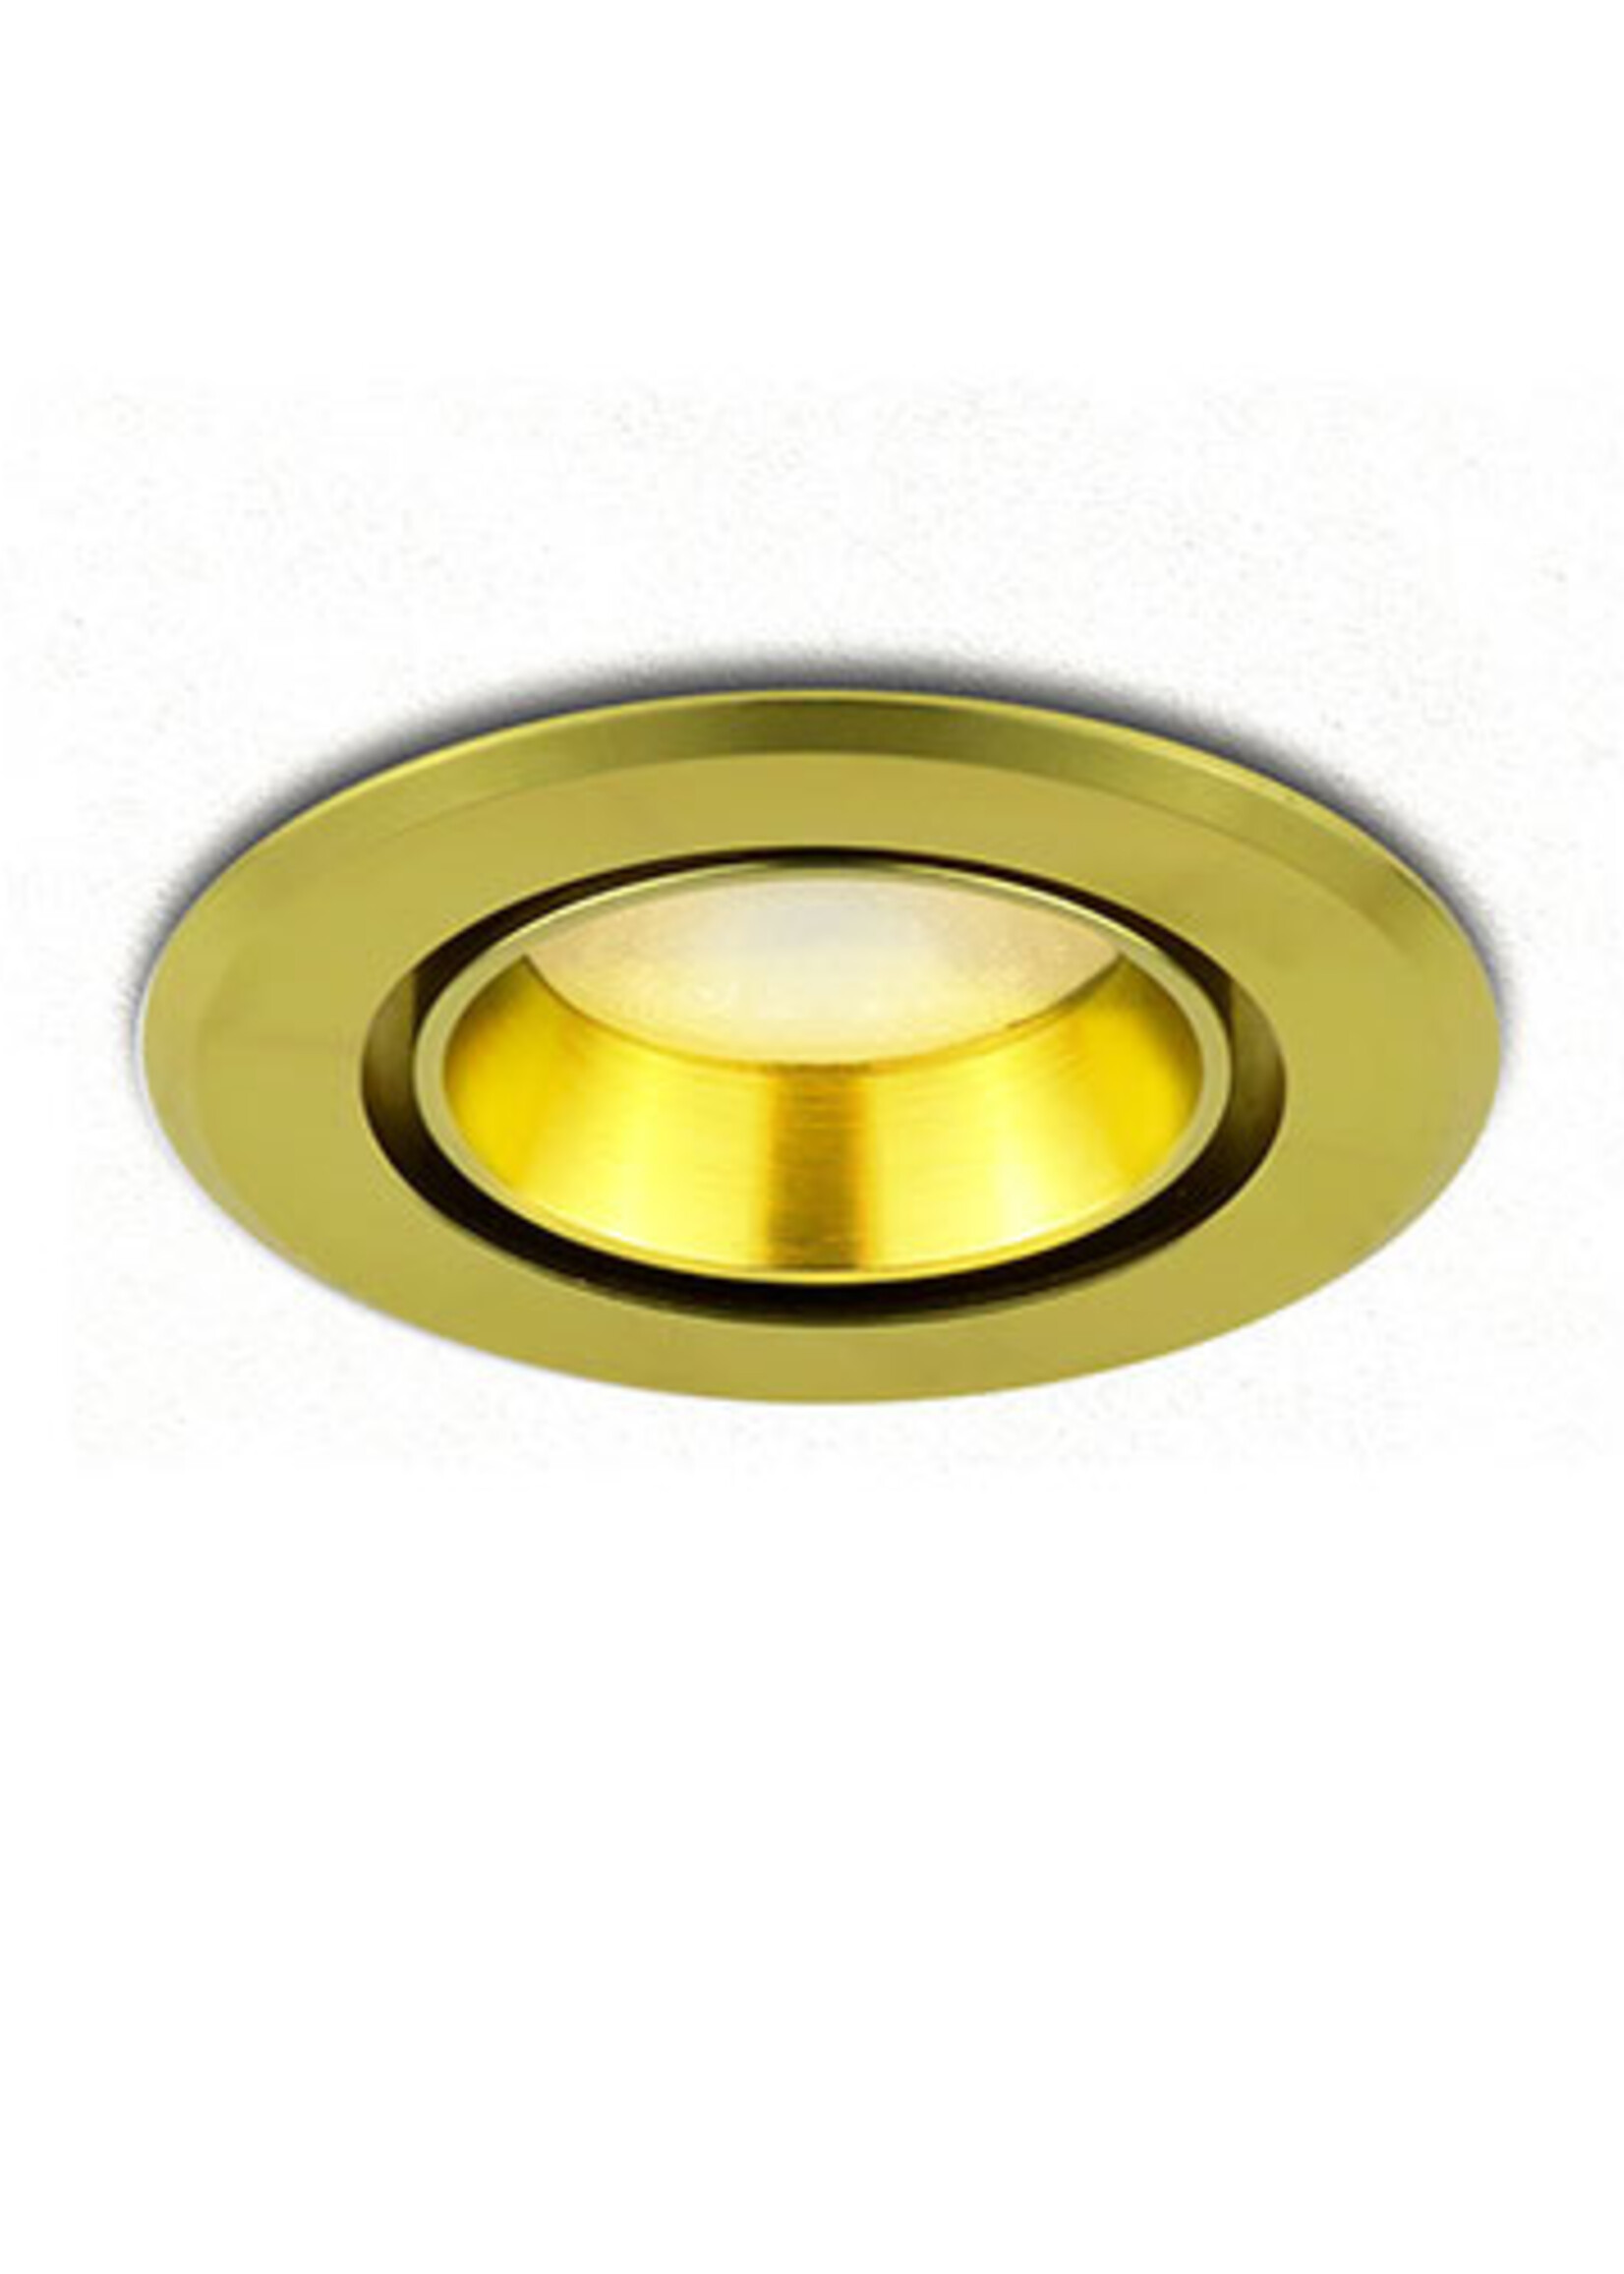 SOLISTECH Golden LED Downlight 5W 3000K warm white ⌀70mm tiltable